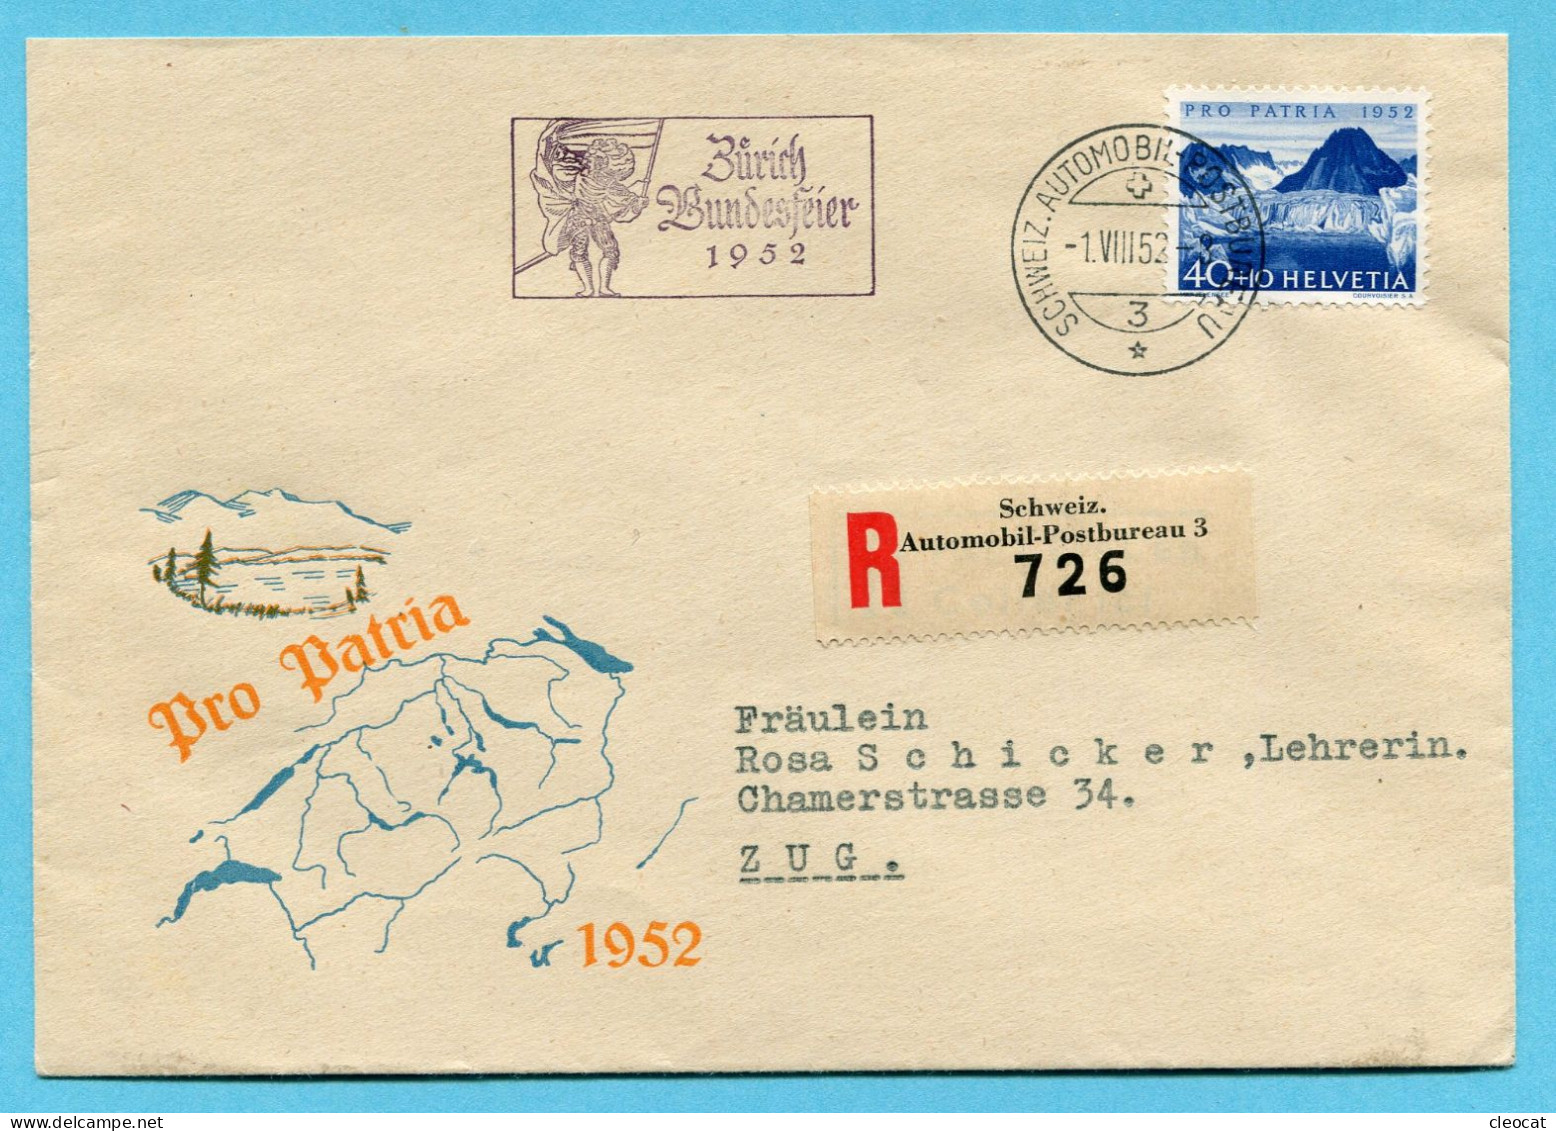 Brief Pro Patria - Gestempelt Zürich Bundesfeier 1952 Und Schweiz. Automobil-Postbureau 1.VIII.52 Auf P2 - Covers & Documents